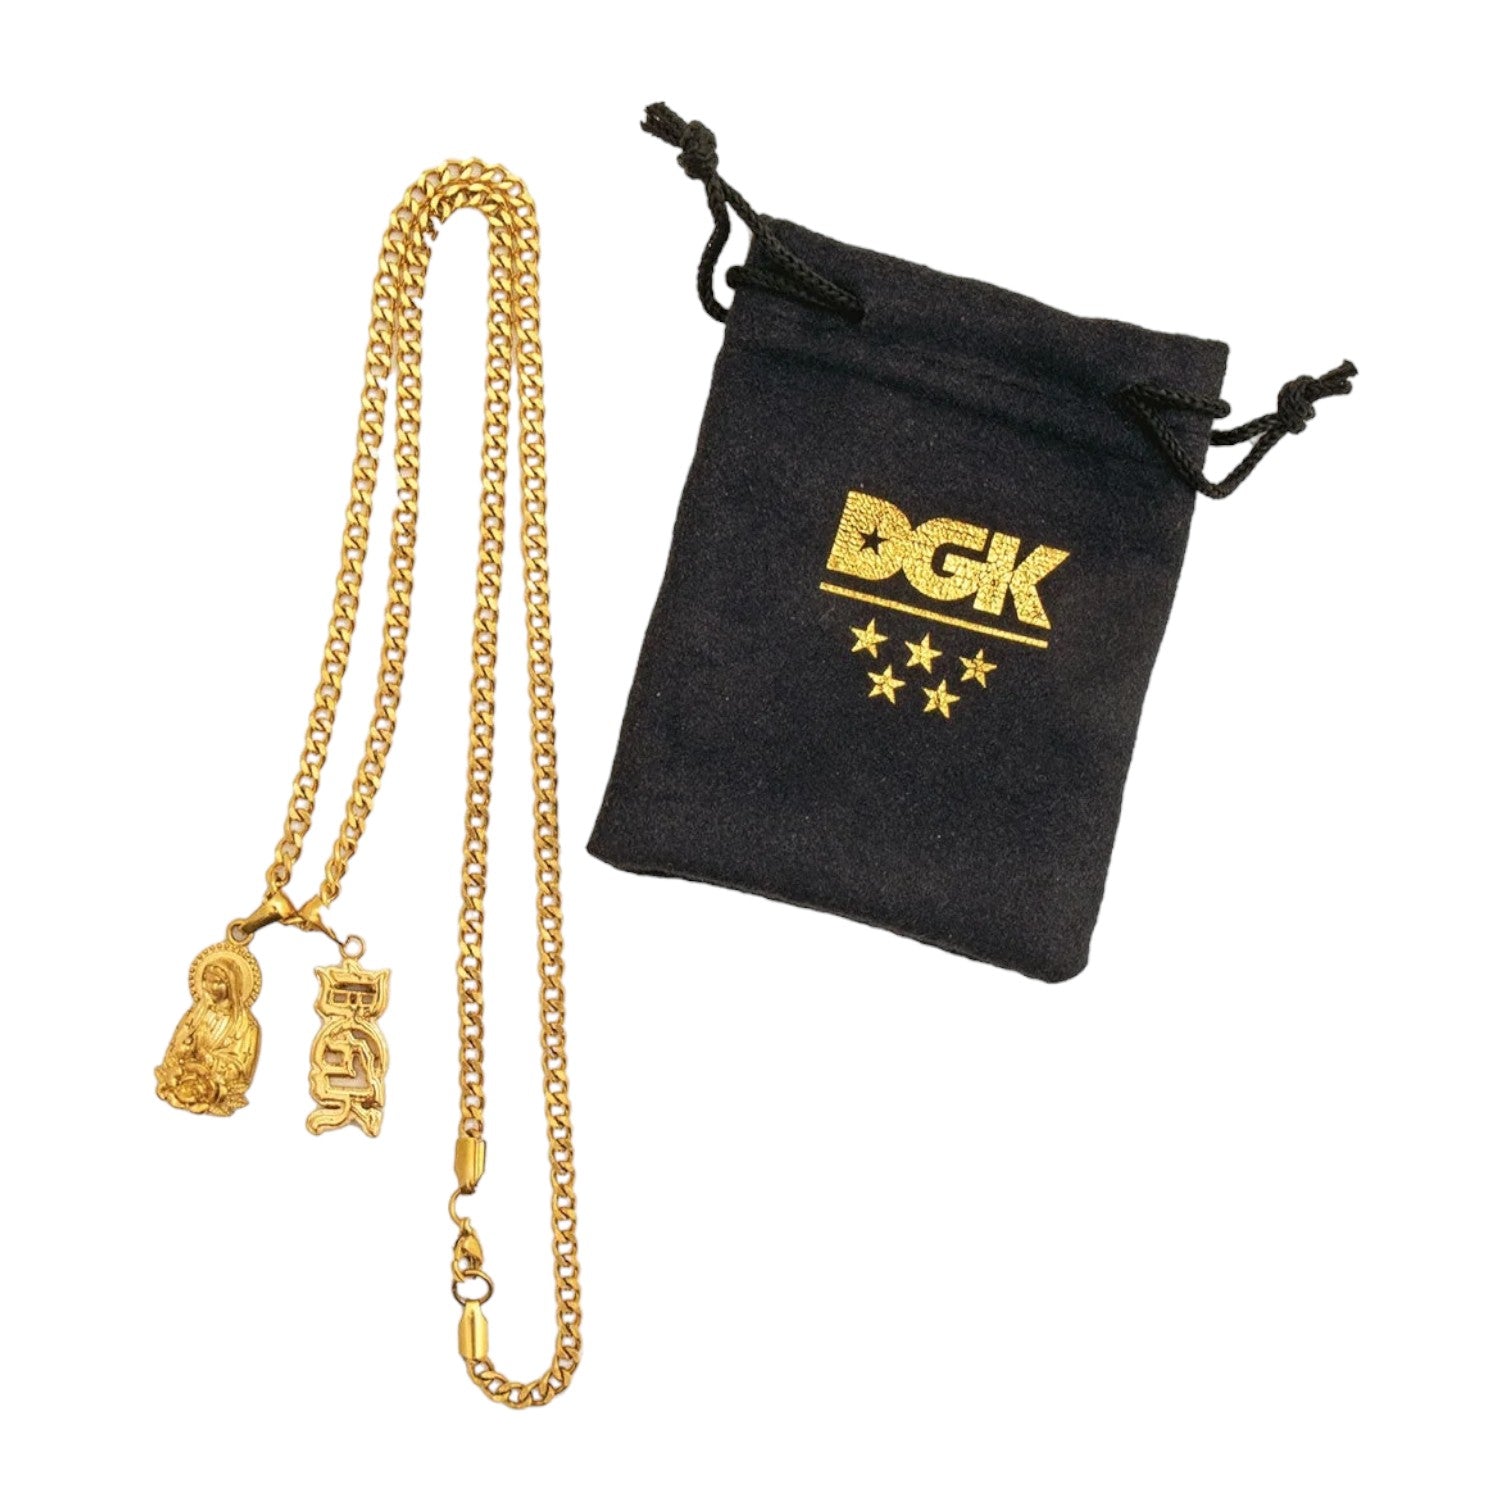 DGK Santa Maria Necklace - Gold